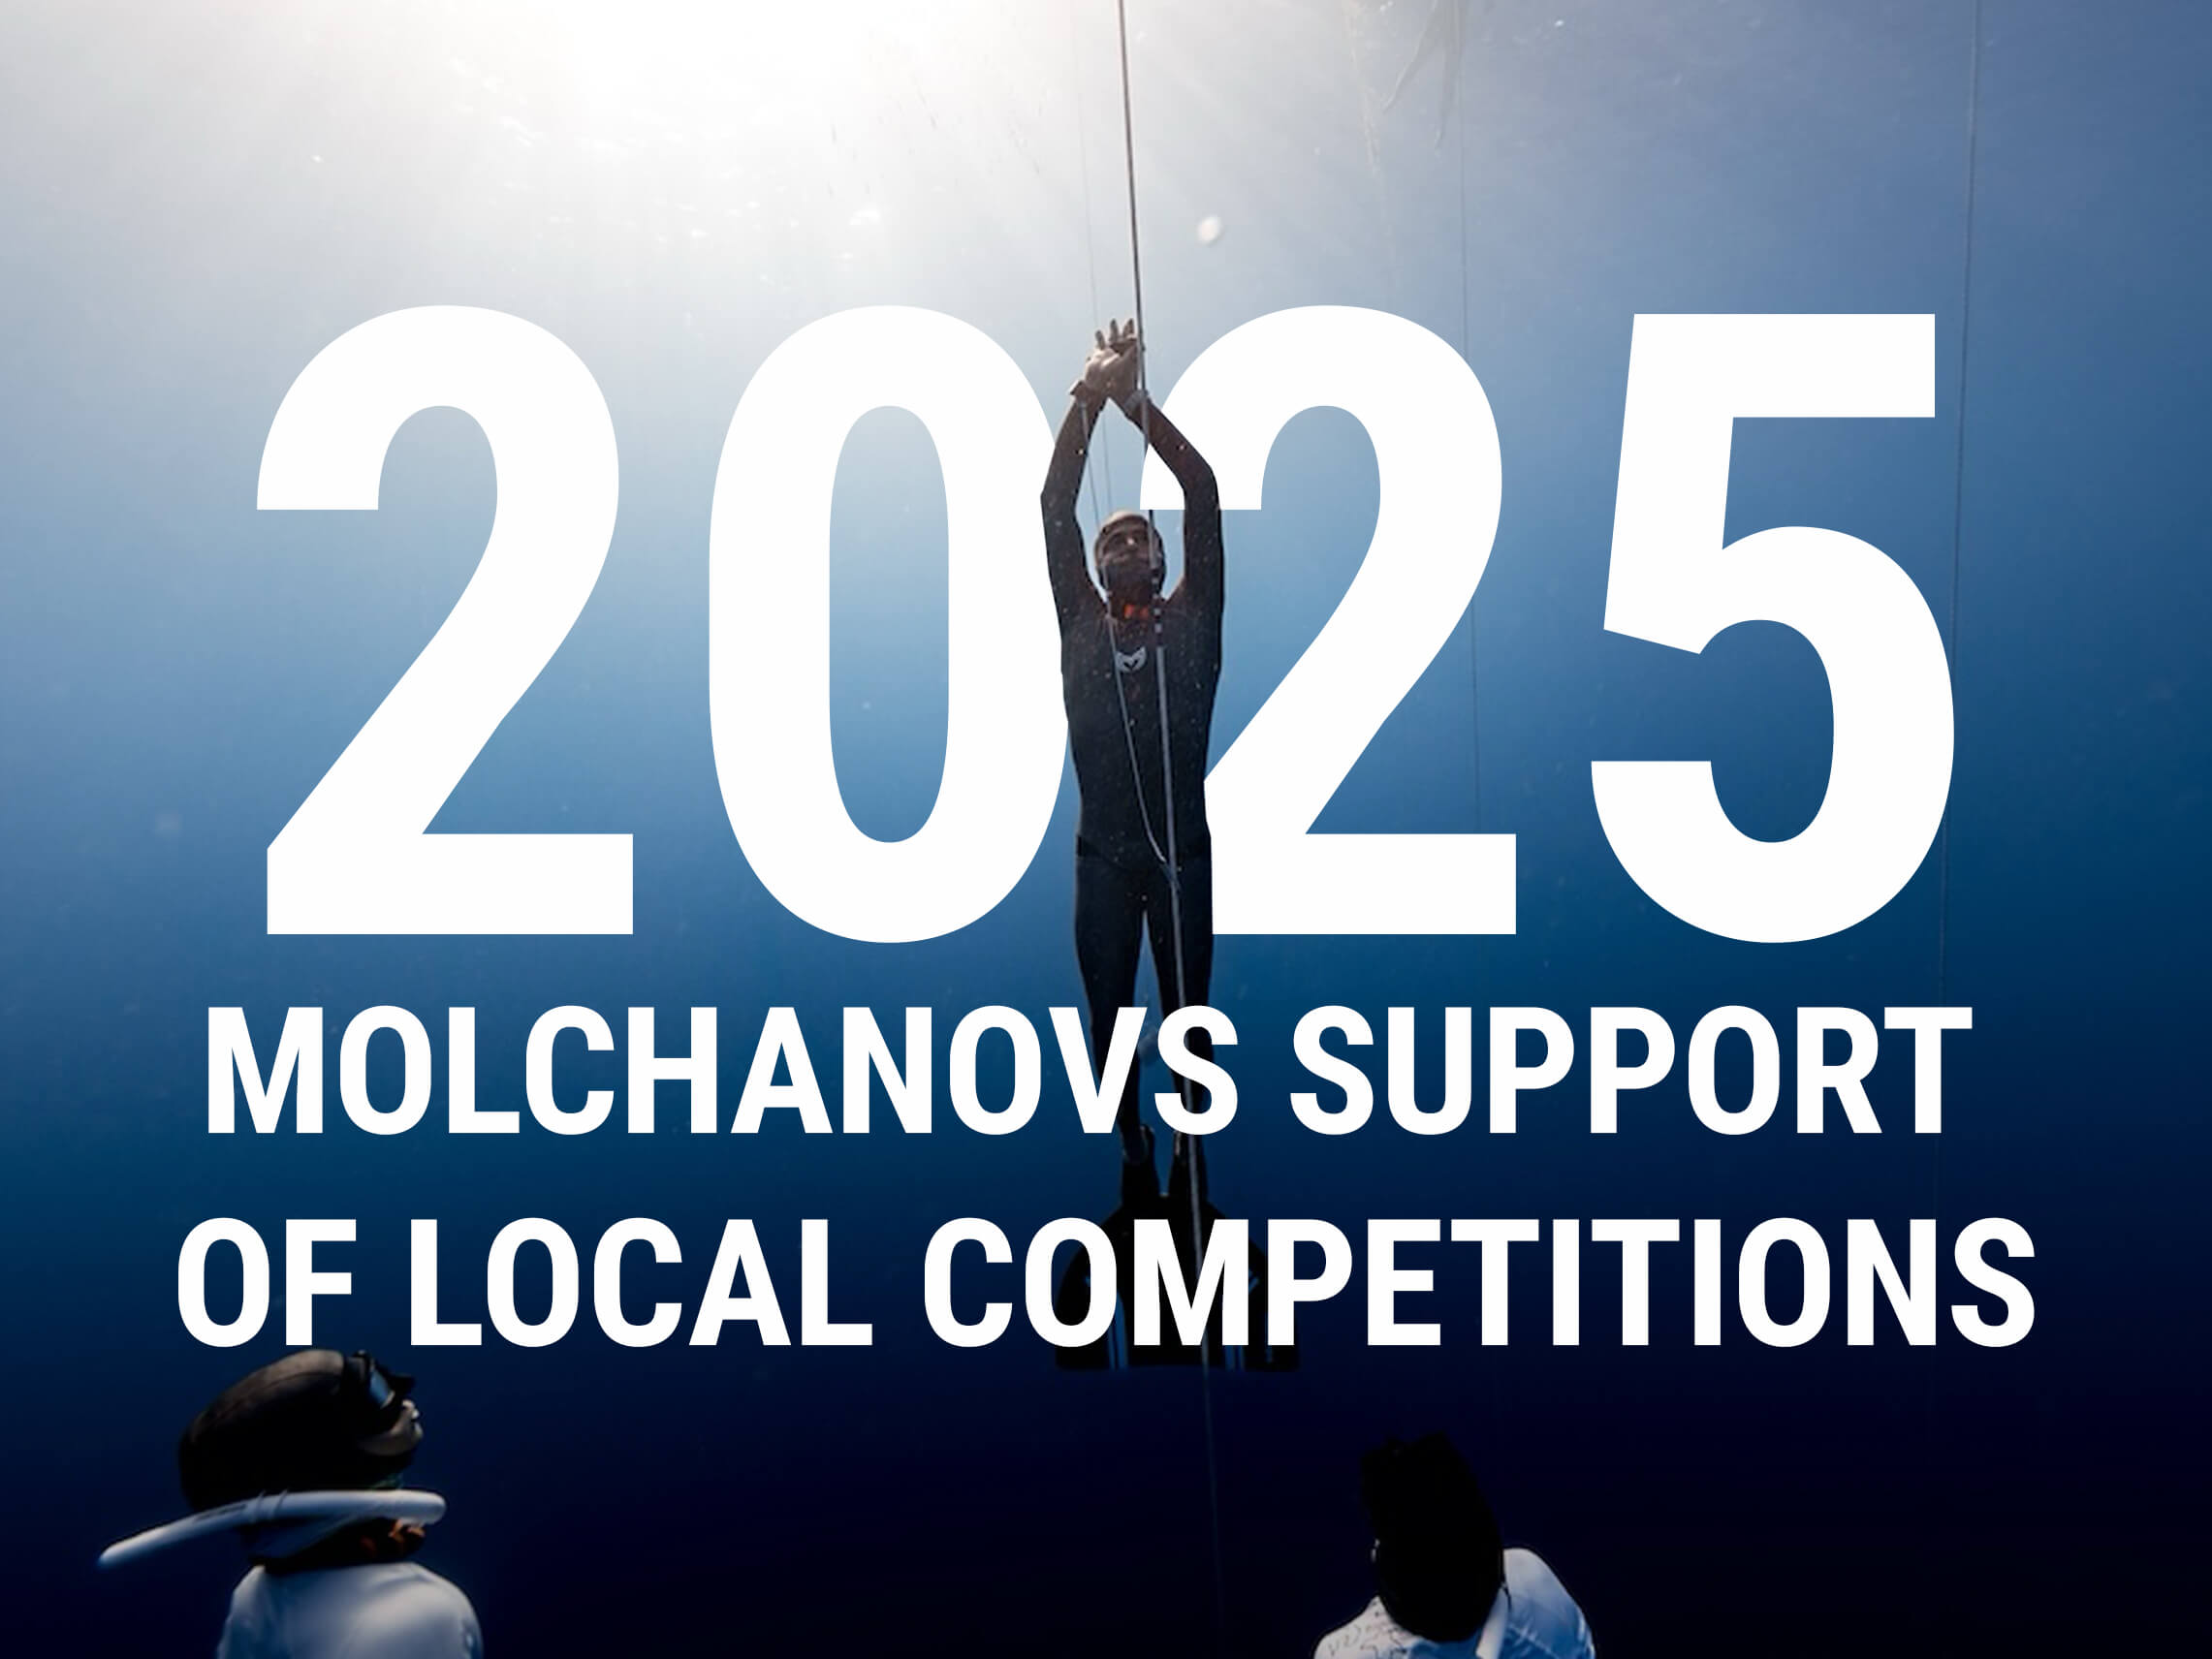 2024 年的机会：赢得 Molchanovs 装备并申请赞助 2025 年比赛